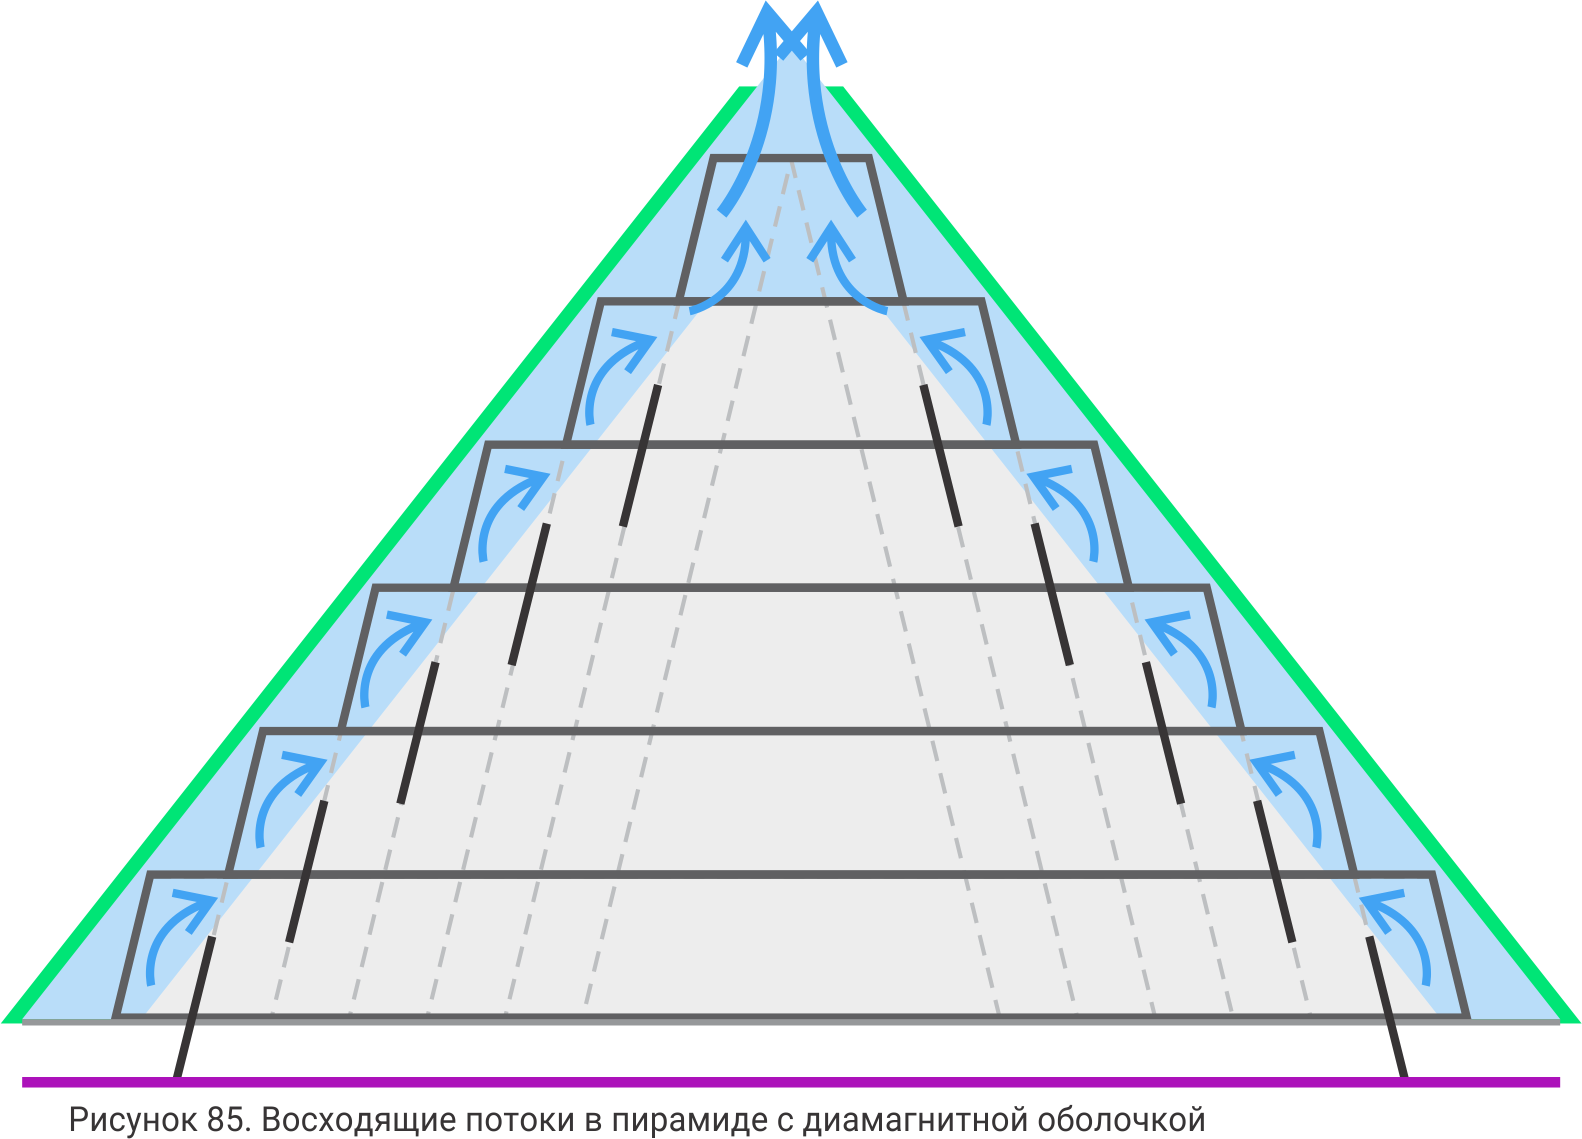 Восходящий в 4 доме. Пирамидальная структура. Схема в виде пирамиды. Ссылочная пирамида. Правильная структурная пирамида.